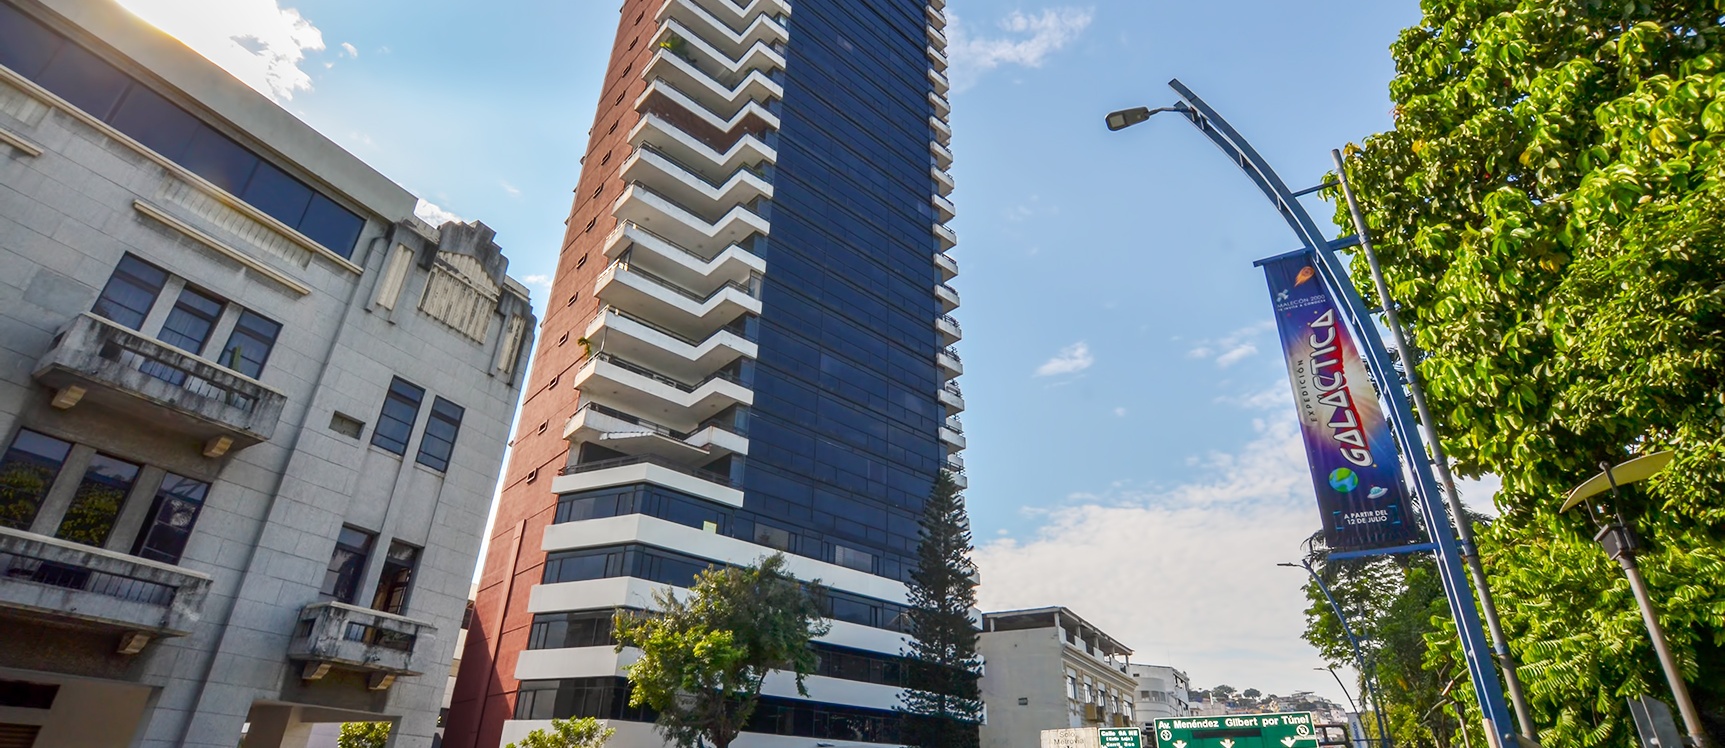 GeoBienes - Departamento en alquiler en El Fortín sector centro de Guayaquil - Plusvalia Guayaquil Casas de venta y alquiler Inmobiliaria Ecuador